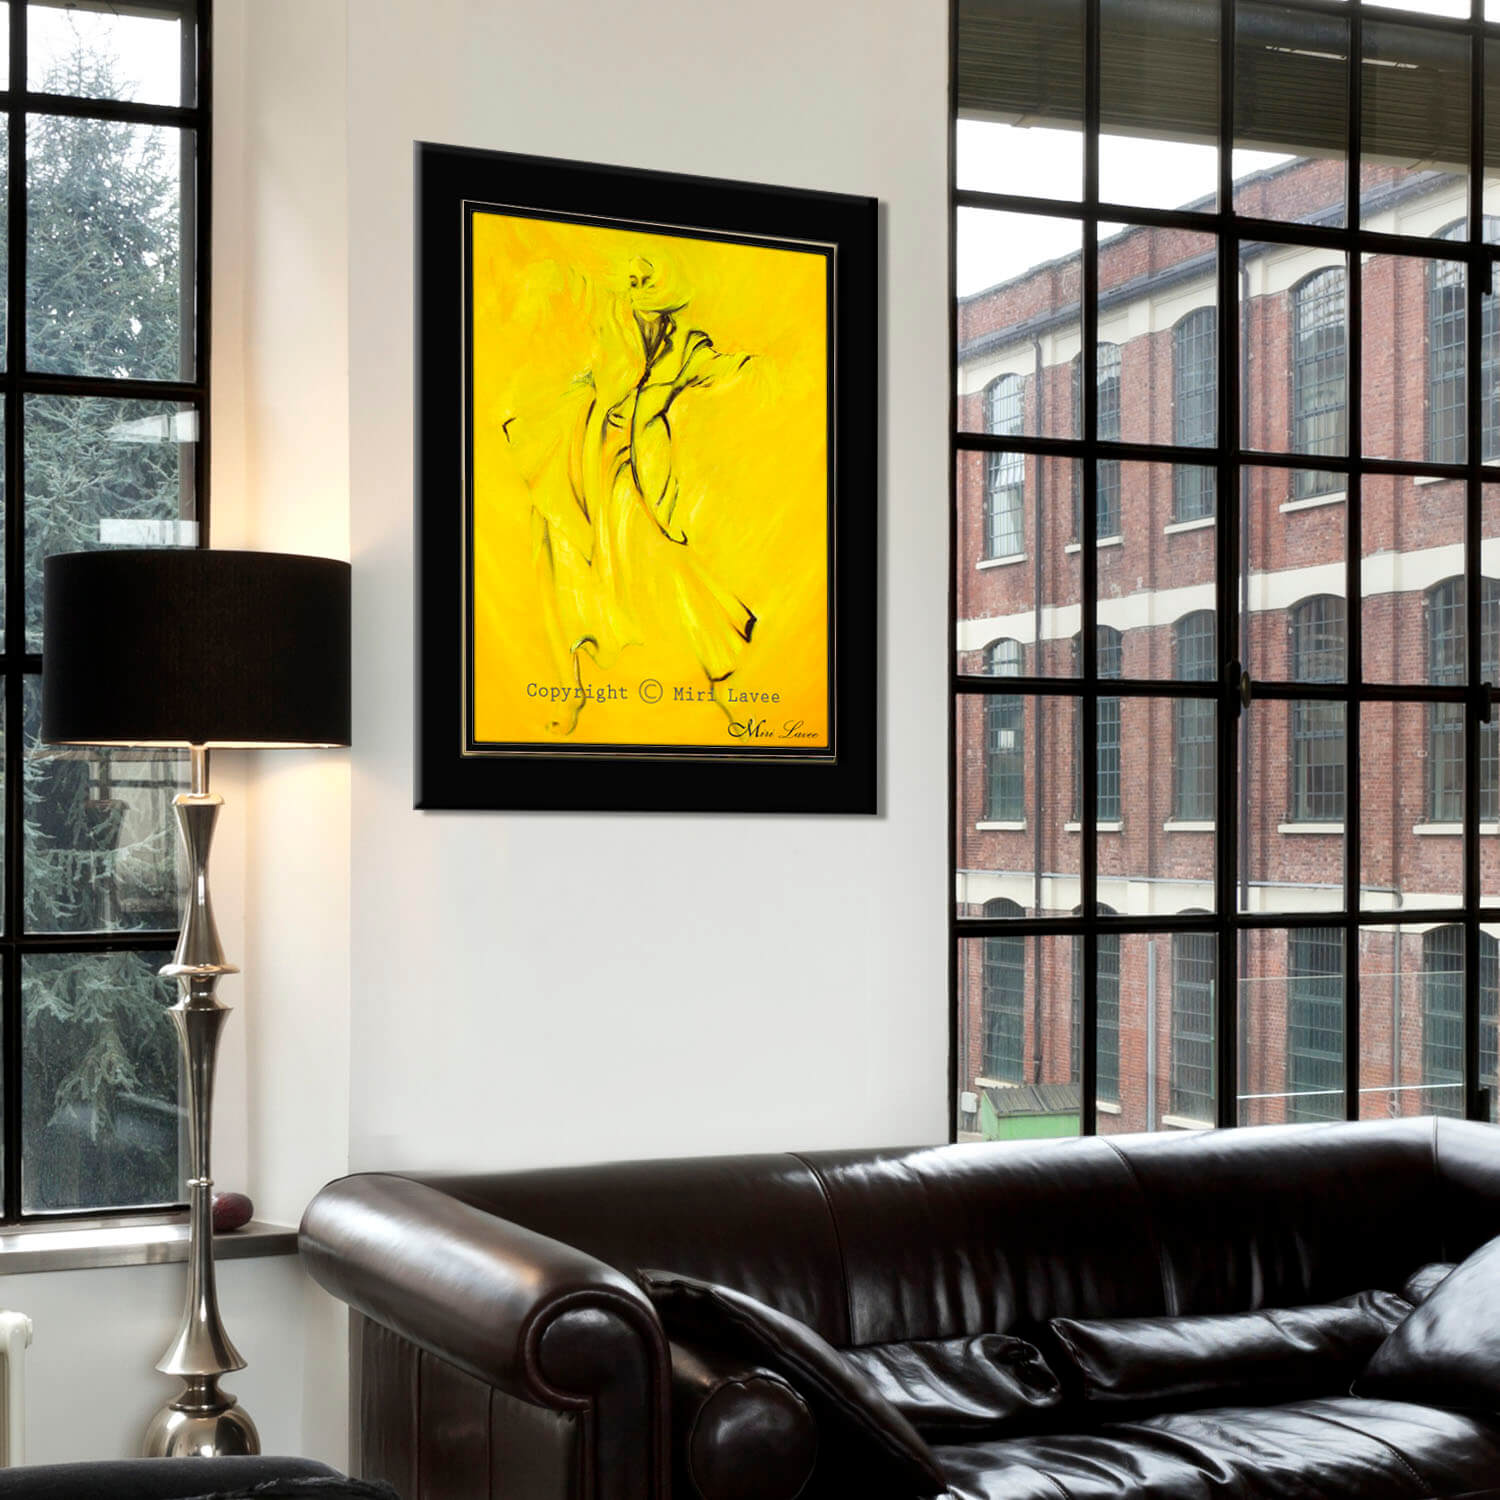 ציור אישה רוקדת באור זהוב ציור גדול ומרשים שבולט בסלון בעיצוב שחור ציירת מירי לביא